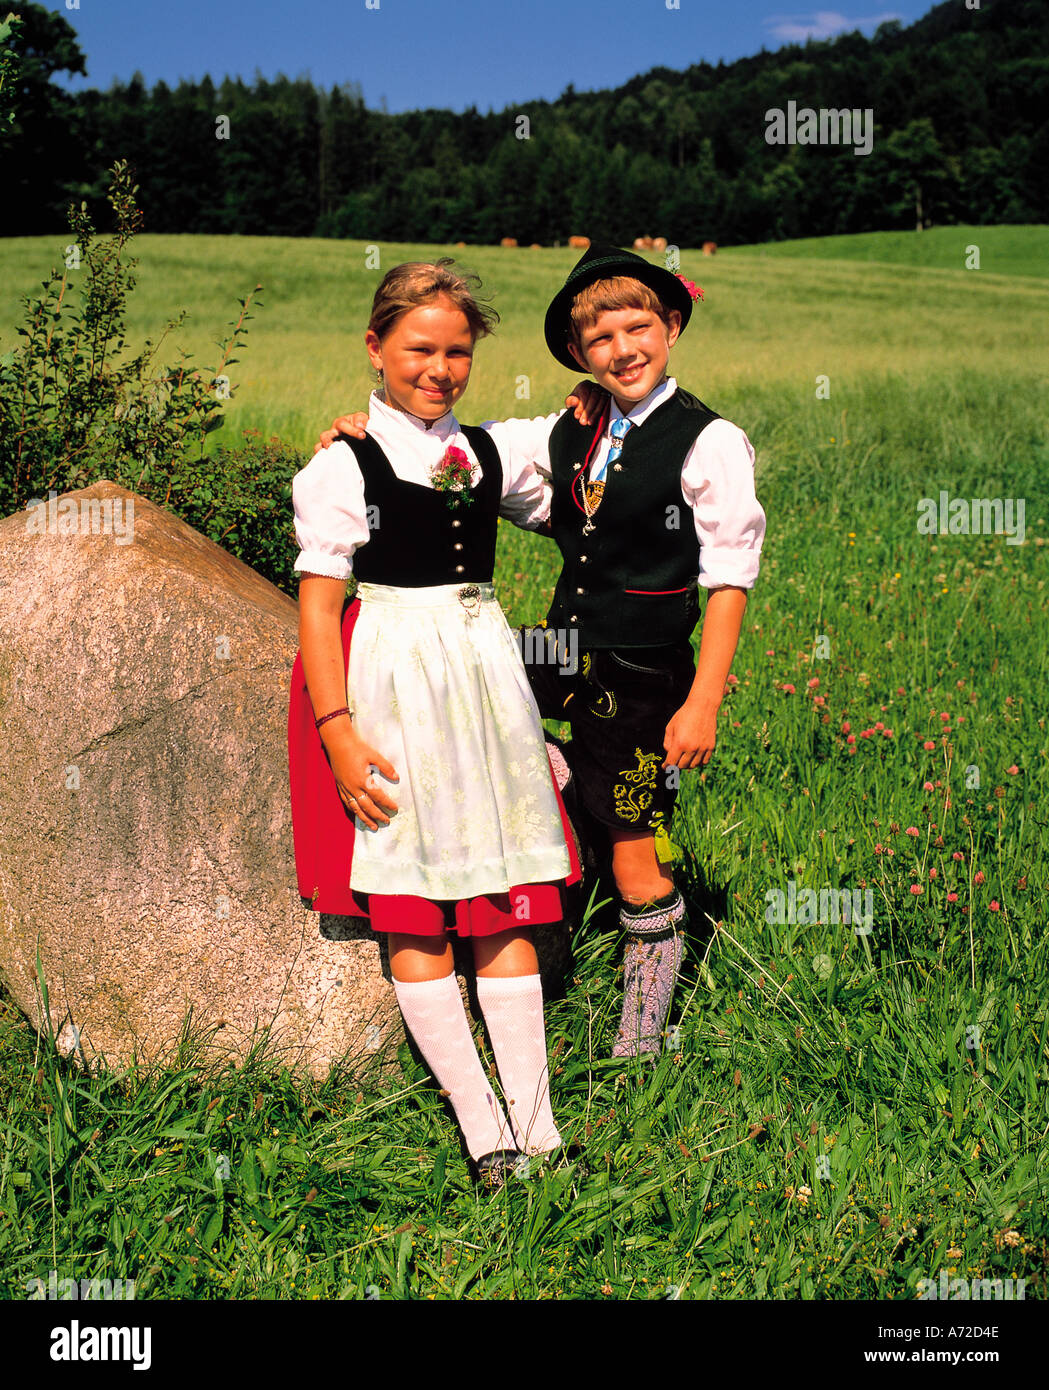 Bayerische Kinder in traditionellen Kostümen in Deutschland Stockfoto ...